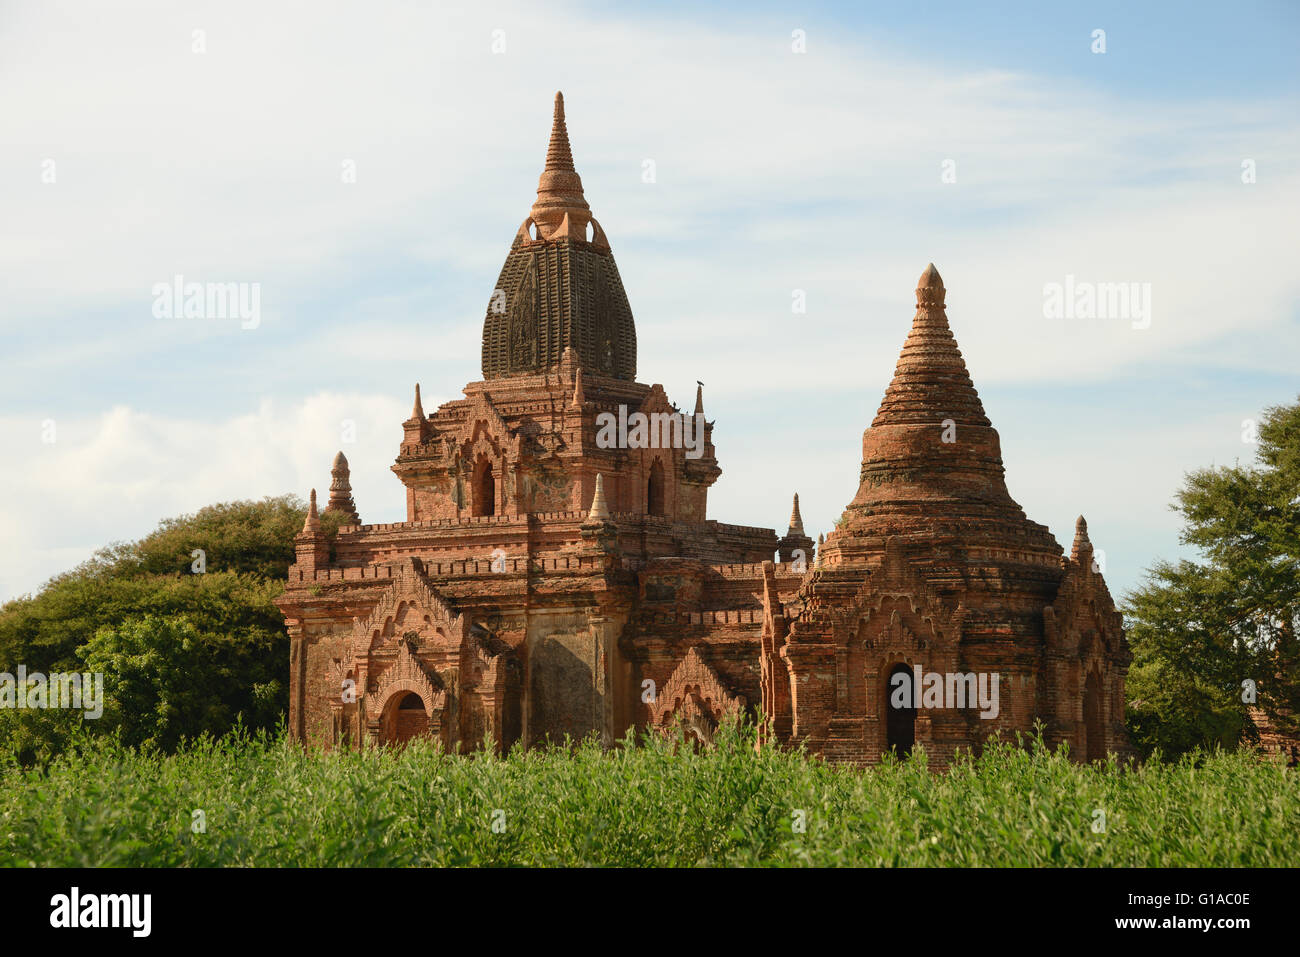 Bagan temples in Myanmar Stock Photo